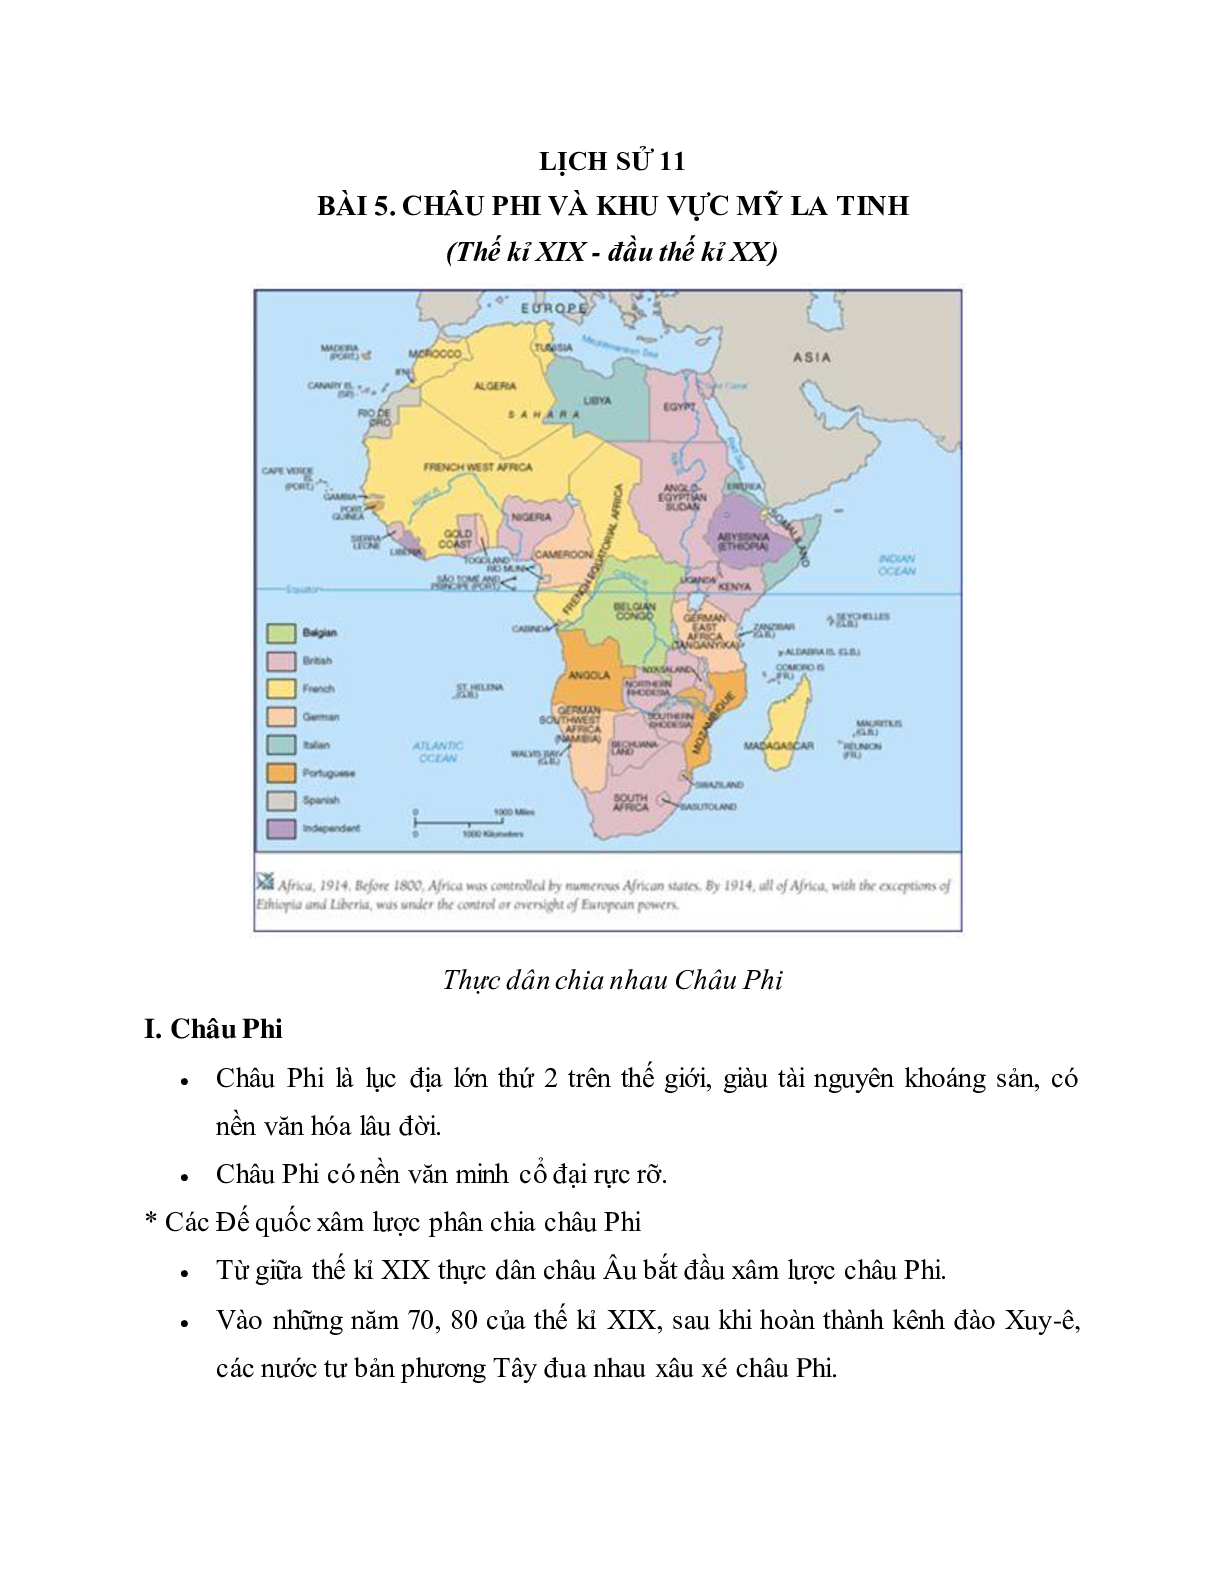 Lý thuyết Lịch sử 11: Bài 5: Châu Phi và các nước Mỹ La-tinh (cuối thế kỉ XIX - đầu thế kỉ XX) mới nhất (trang 1)